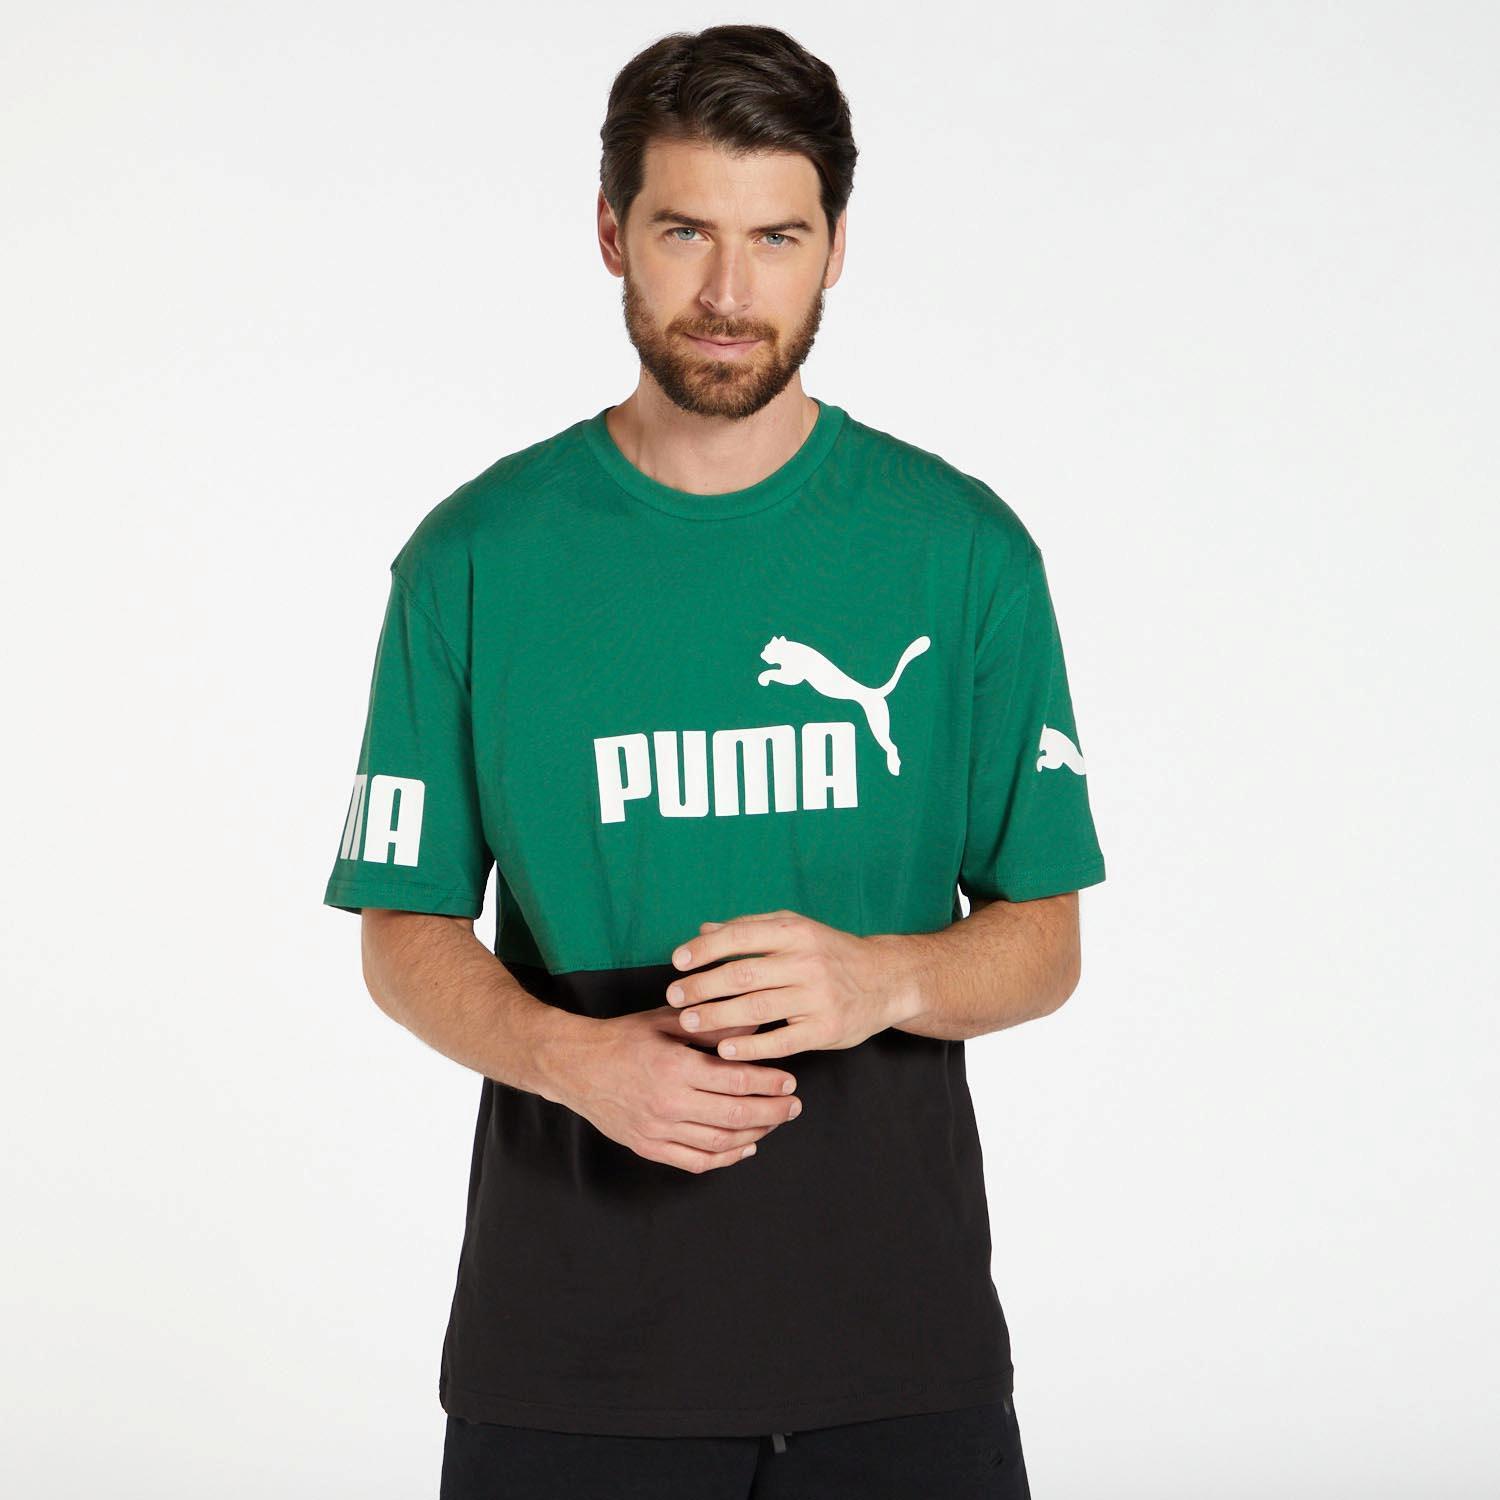 Puma Power Colourblock Groen T-shirt Heren